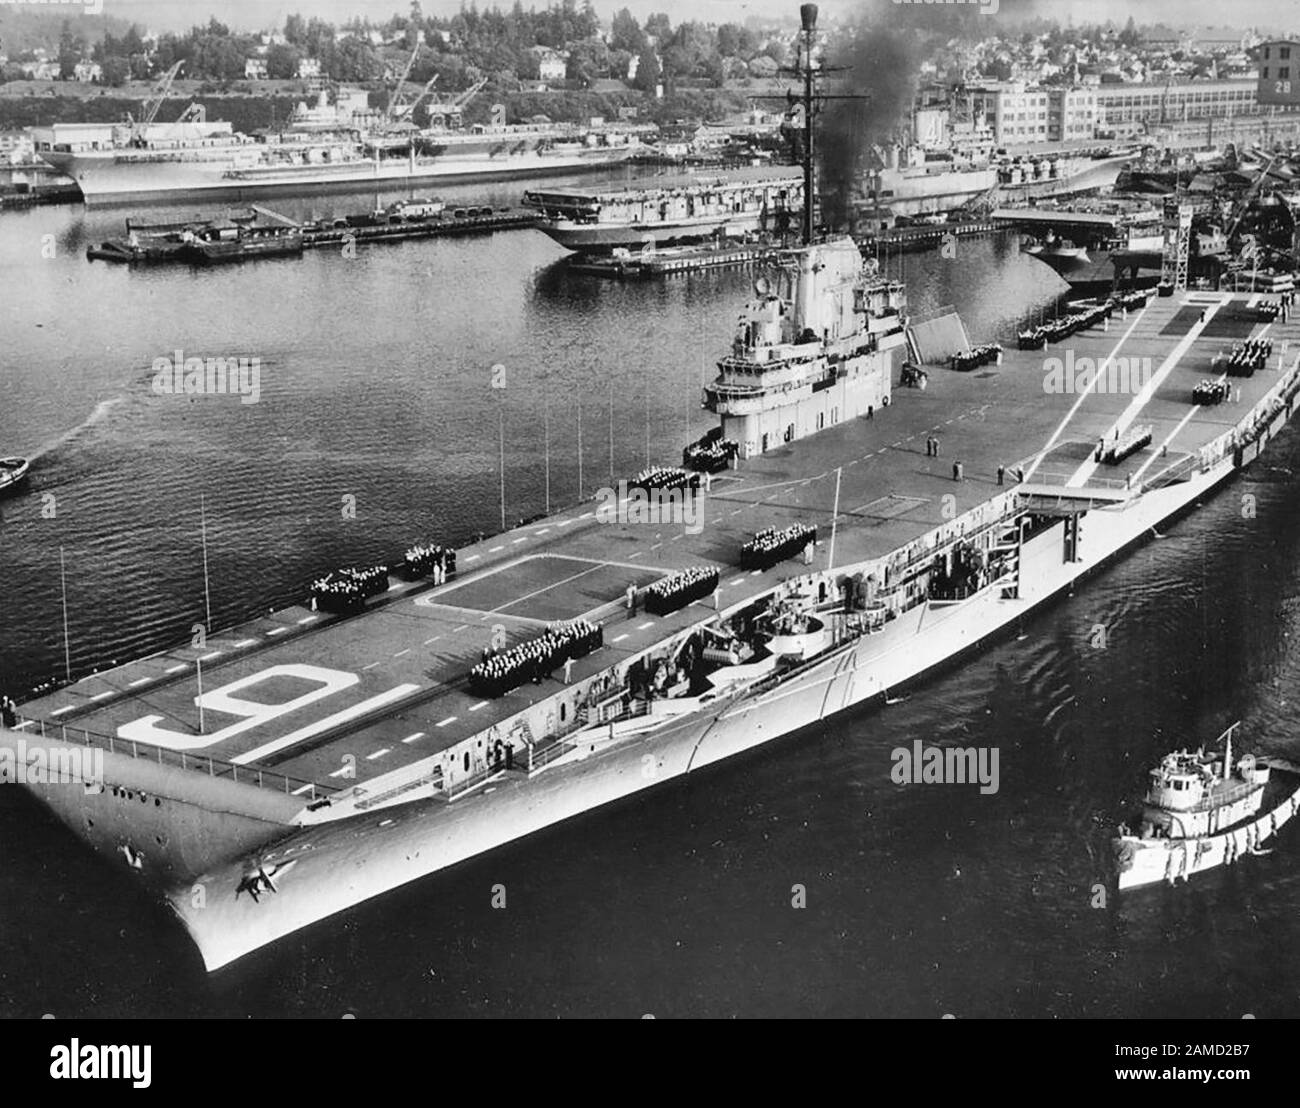 El portaaviones USS Lexington (CVA-16) de la Marina de los EE.UU. Sale del astillero naval Puget Sound, Washington (EE.UU.), en septiembre de 1955, se dirigió a sus ensayos iniciales sobre el mar después de las conversiones SCB-27C y -125. El USS Franklin D. Roosevelt (CVA-42), en el fondo, está bien en su modernización SCB-110. USS Midway (CVA-41), en la distancia media, está en las etapas muy tempranas de (o siendo preparado para) su propio SCB-110. Otro portador de la clase Essex es visible a la derecha, ya sea USS Essex (CVA-9) o USS Yorktown (CVA-10) durante sus conversiones SCB-125. Alrededor De Septiembre De 1955 Foto de stock